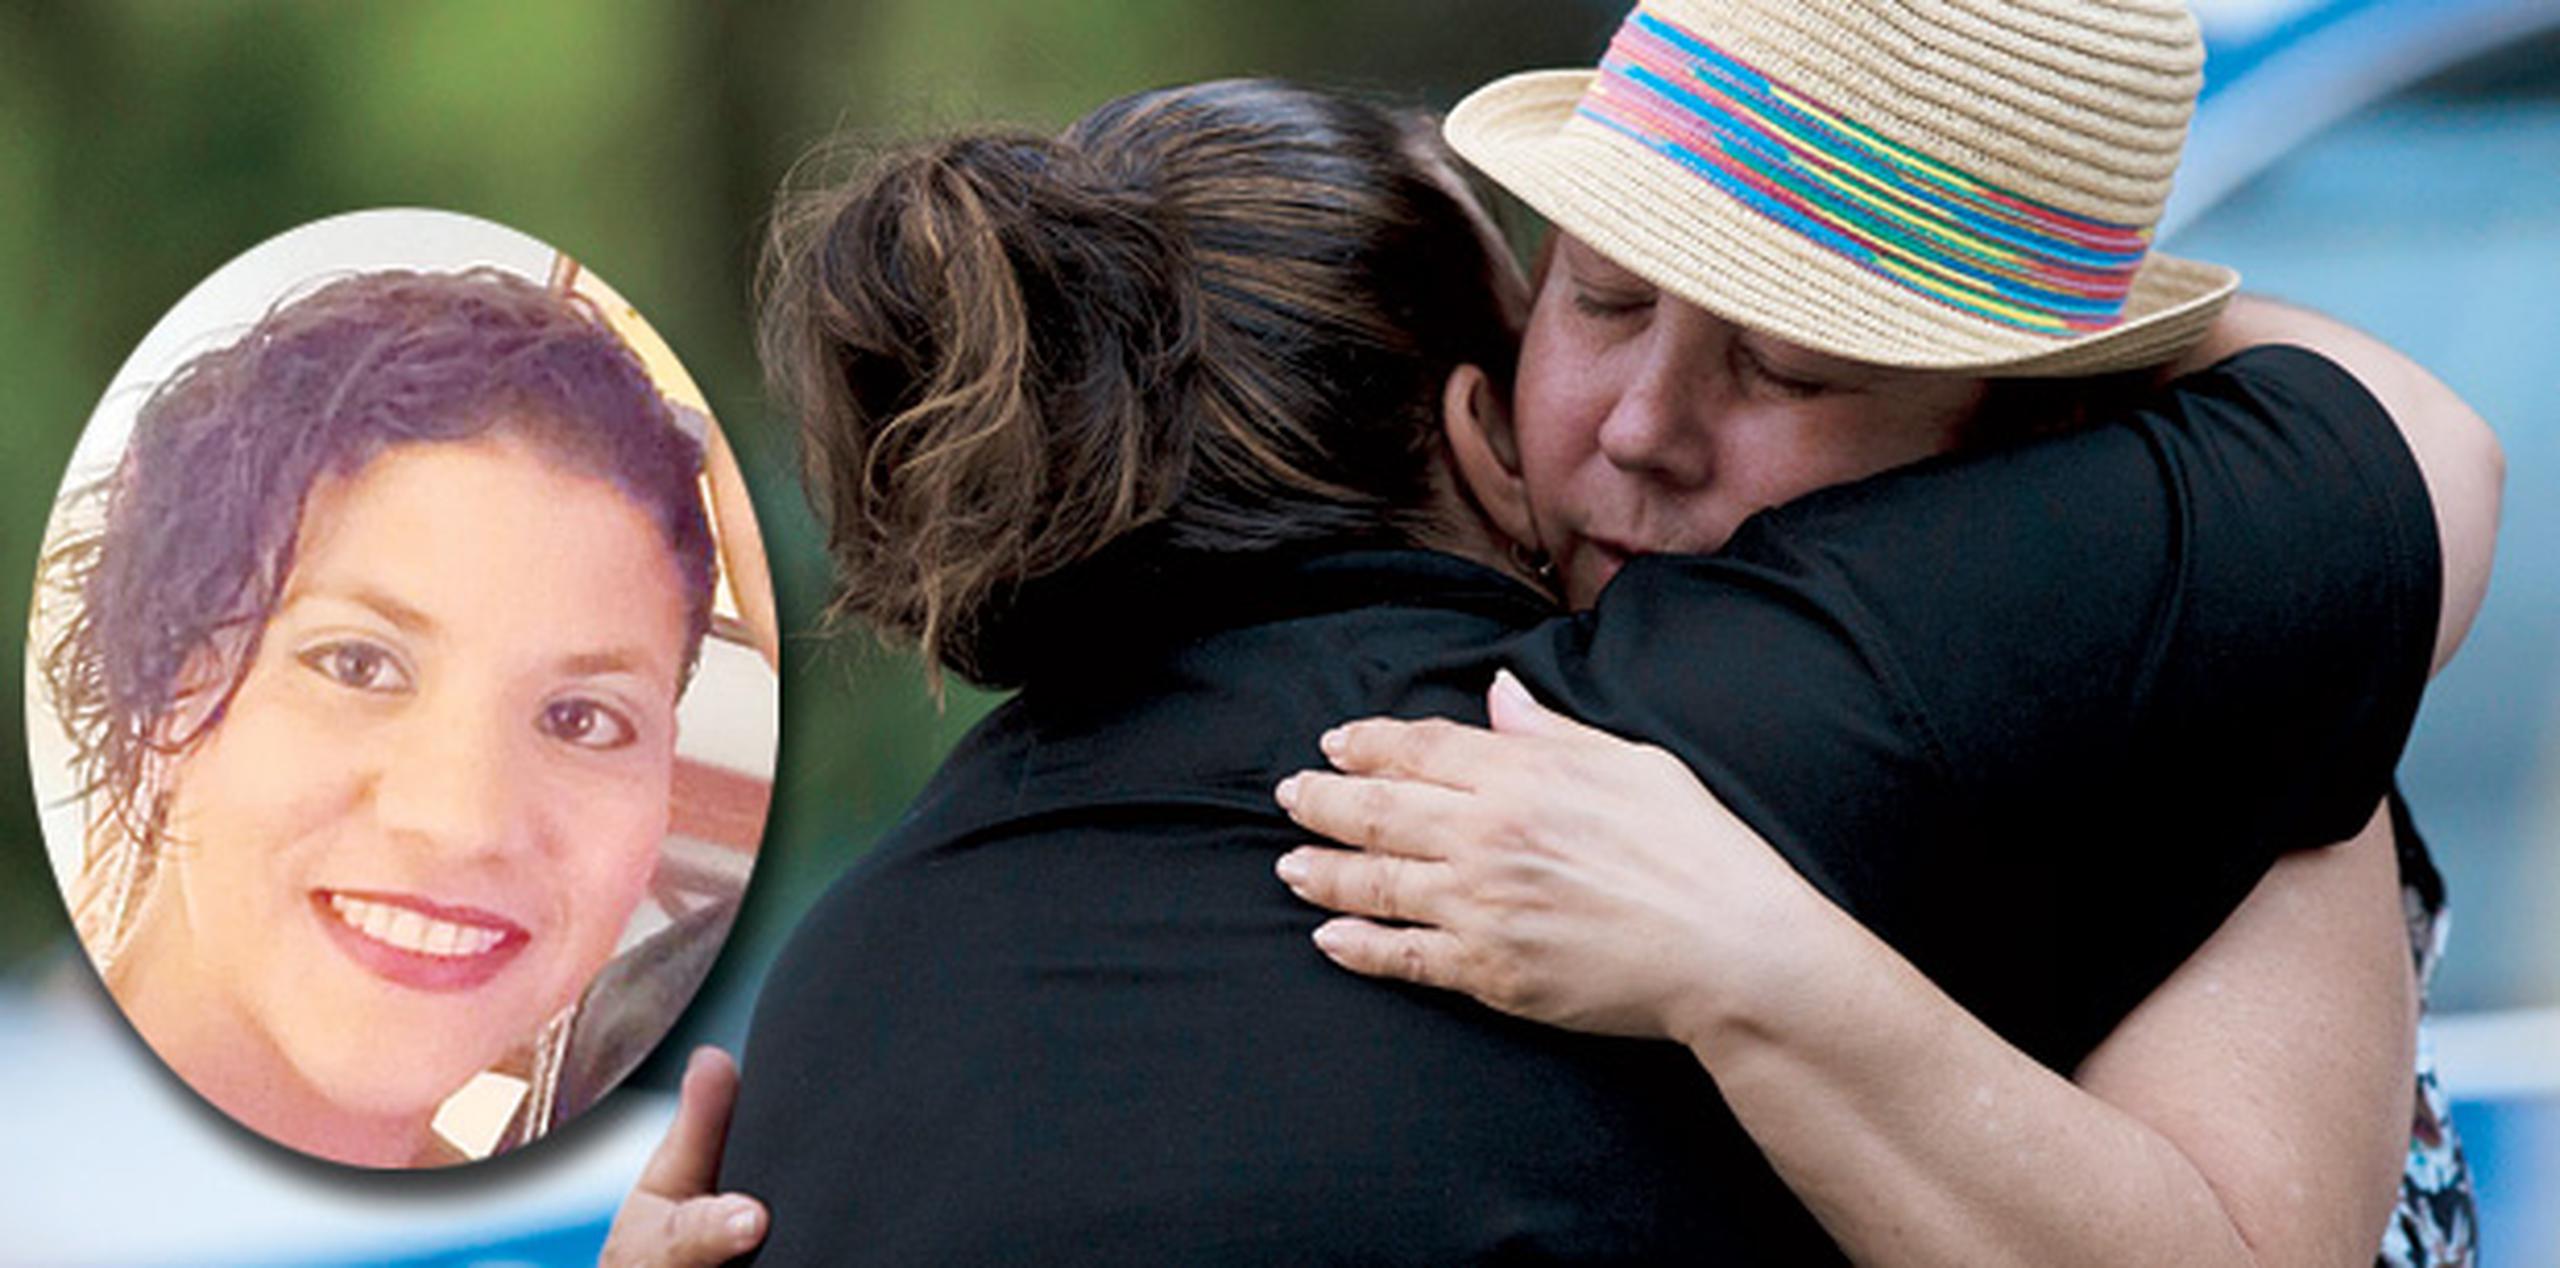 Awilda Meléndez, madre de Sheiley, es abrazada cuando las agencias anunciaron que suspendían la búsqueda de la joven, desaparecida desde el domingo. (jorge.ramirez@gfrmedial.com)